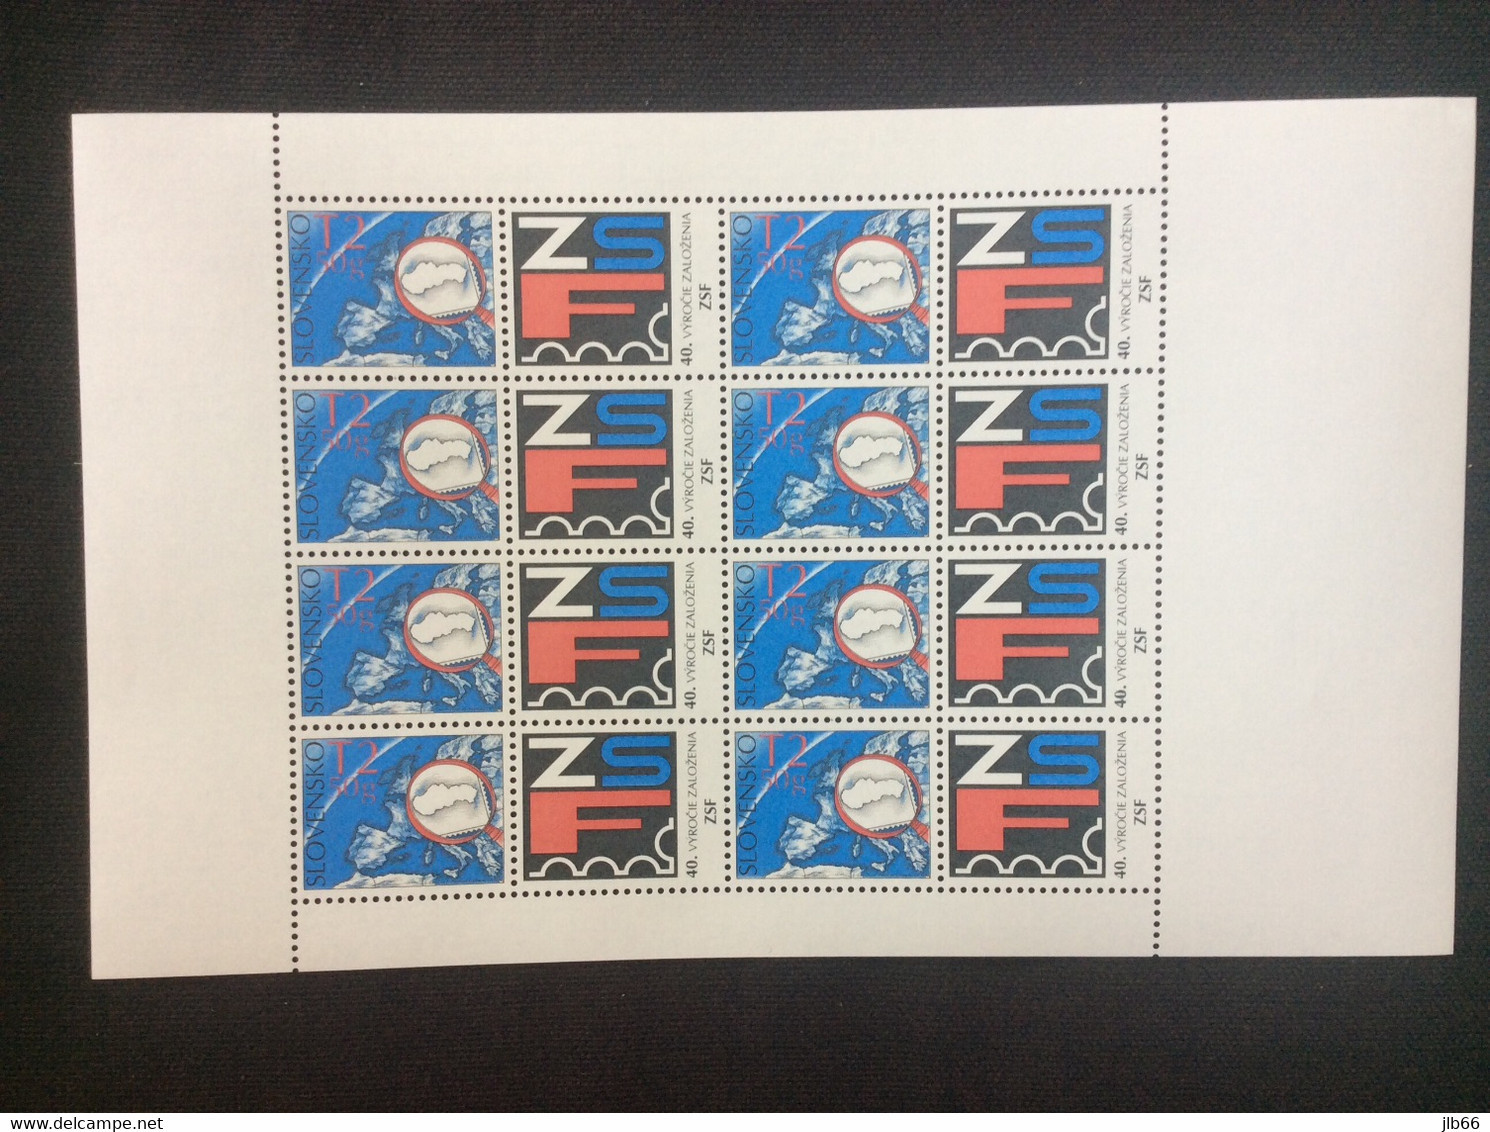 Bloc De 8 Timbres + 8 Coupons Philatélie Loupe  Neuf YT 536 / Sheet  2009 Mint Mi 613 Zf - Unused Stamps